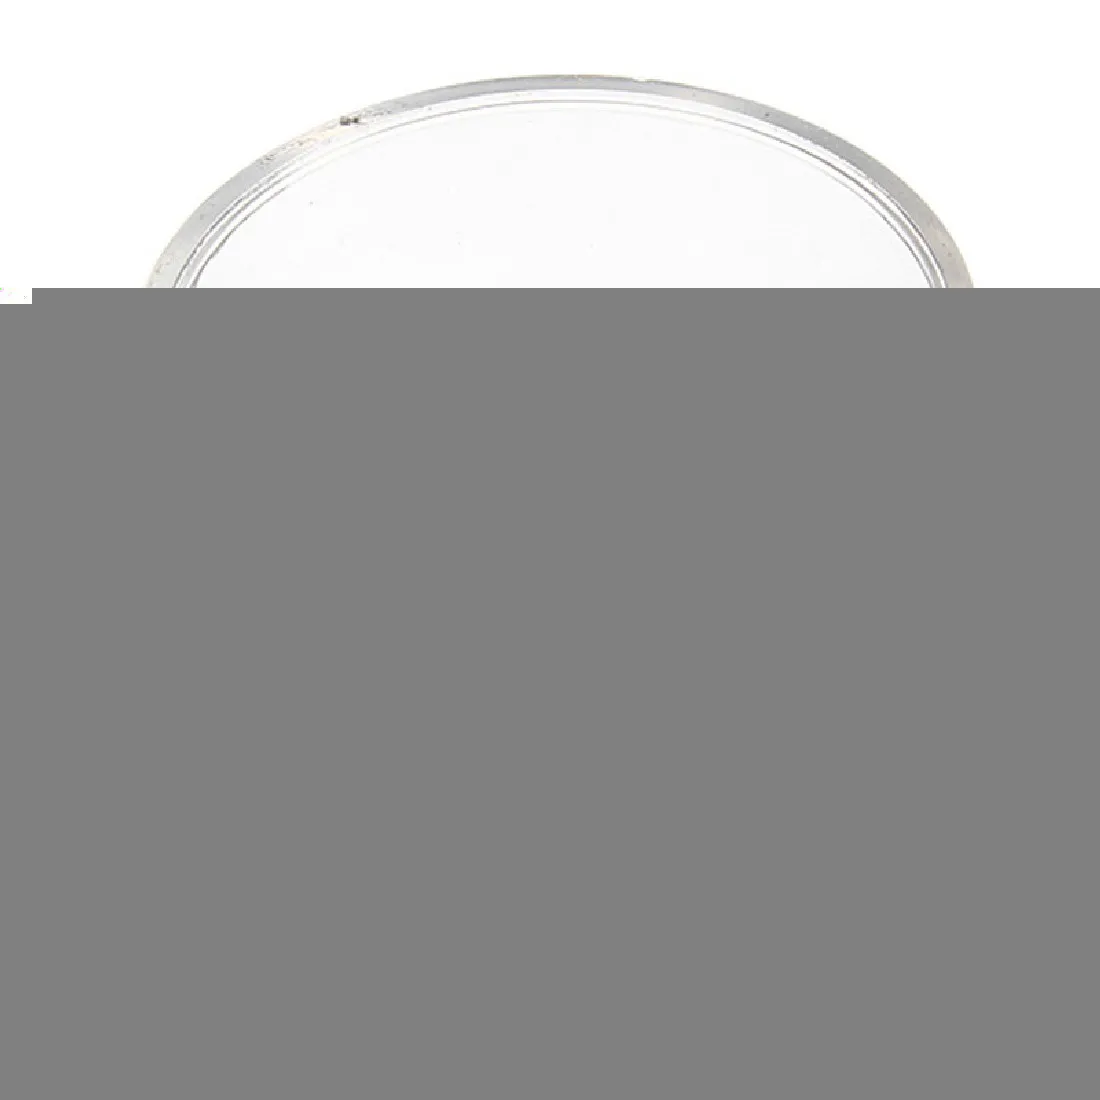 1 шт. бренд Портативный 15X монокуляр, увеличительное стекло лупа объектива Ювелирный инструмент лупа для глаз инструмент для ремонта часов